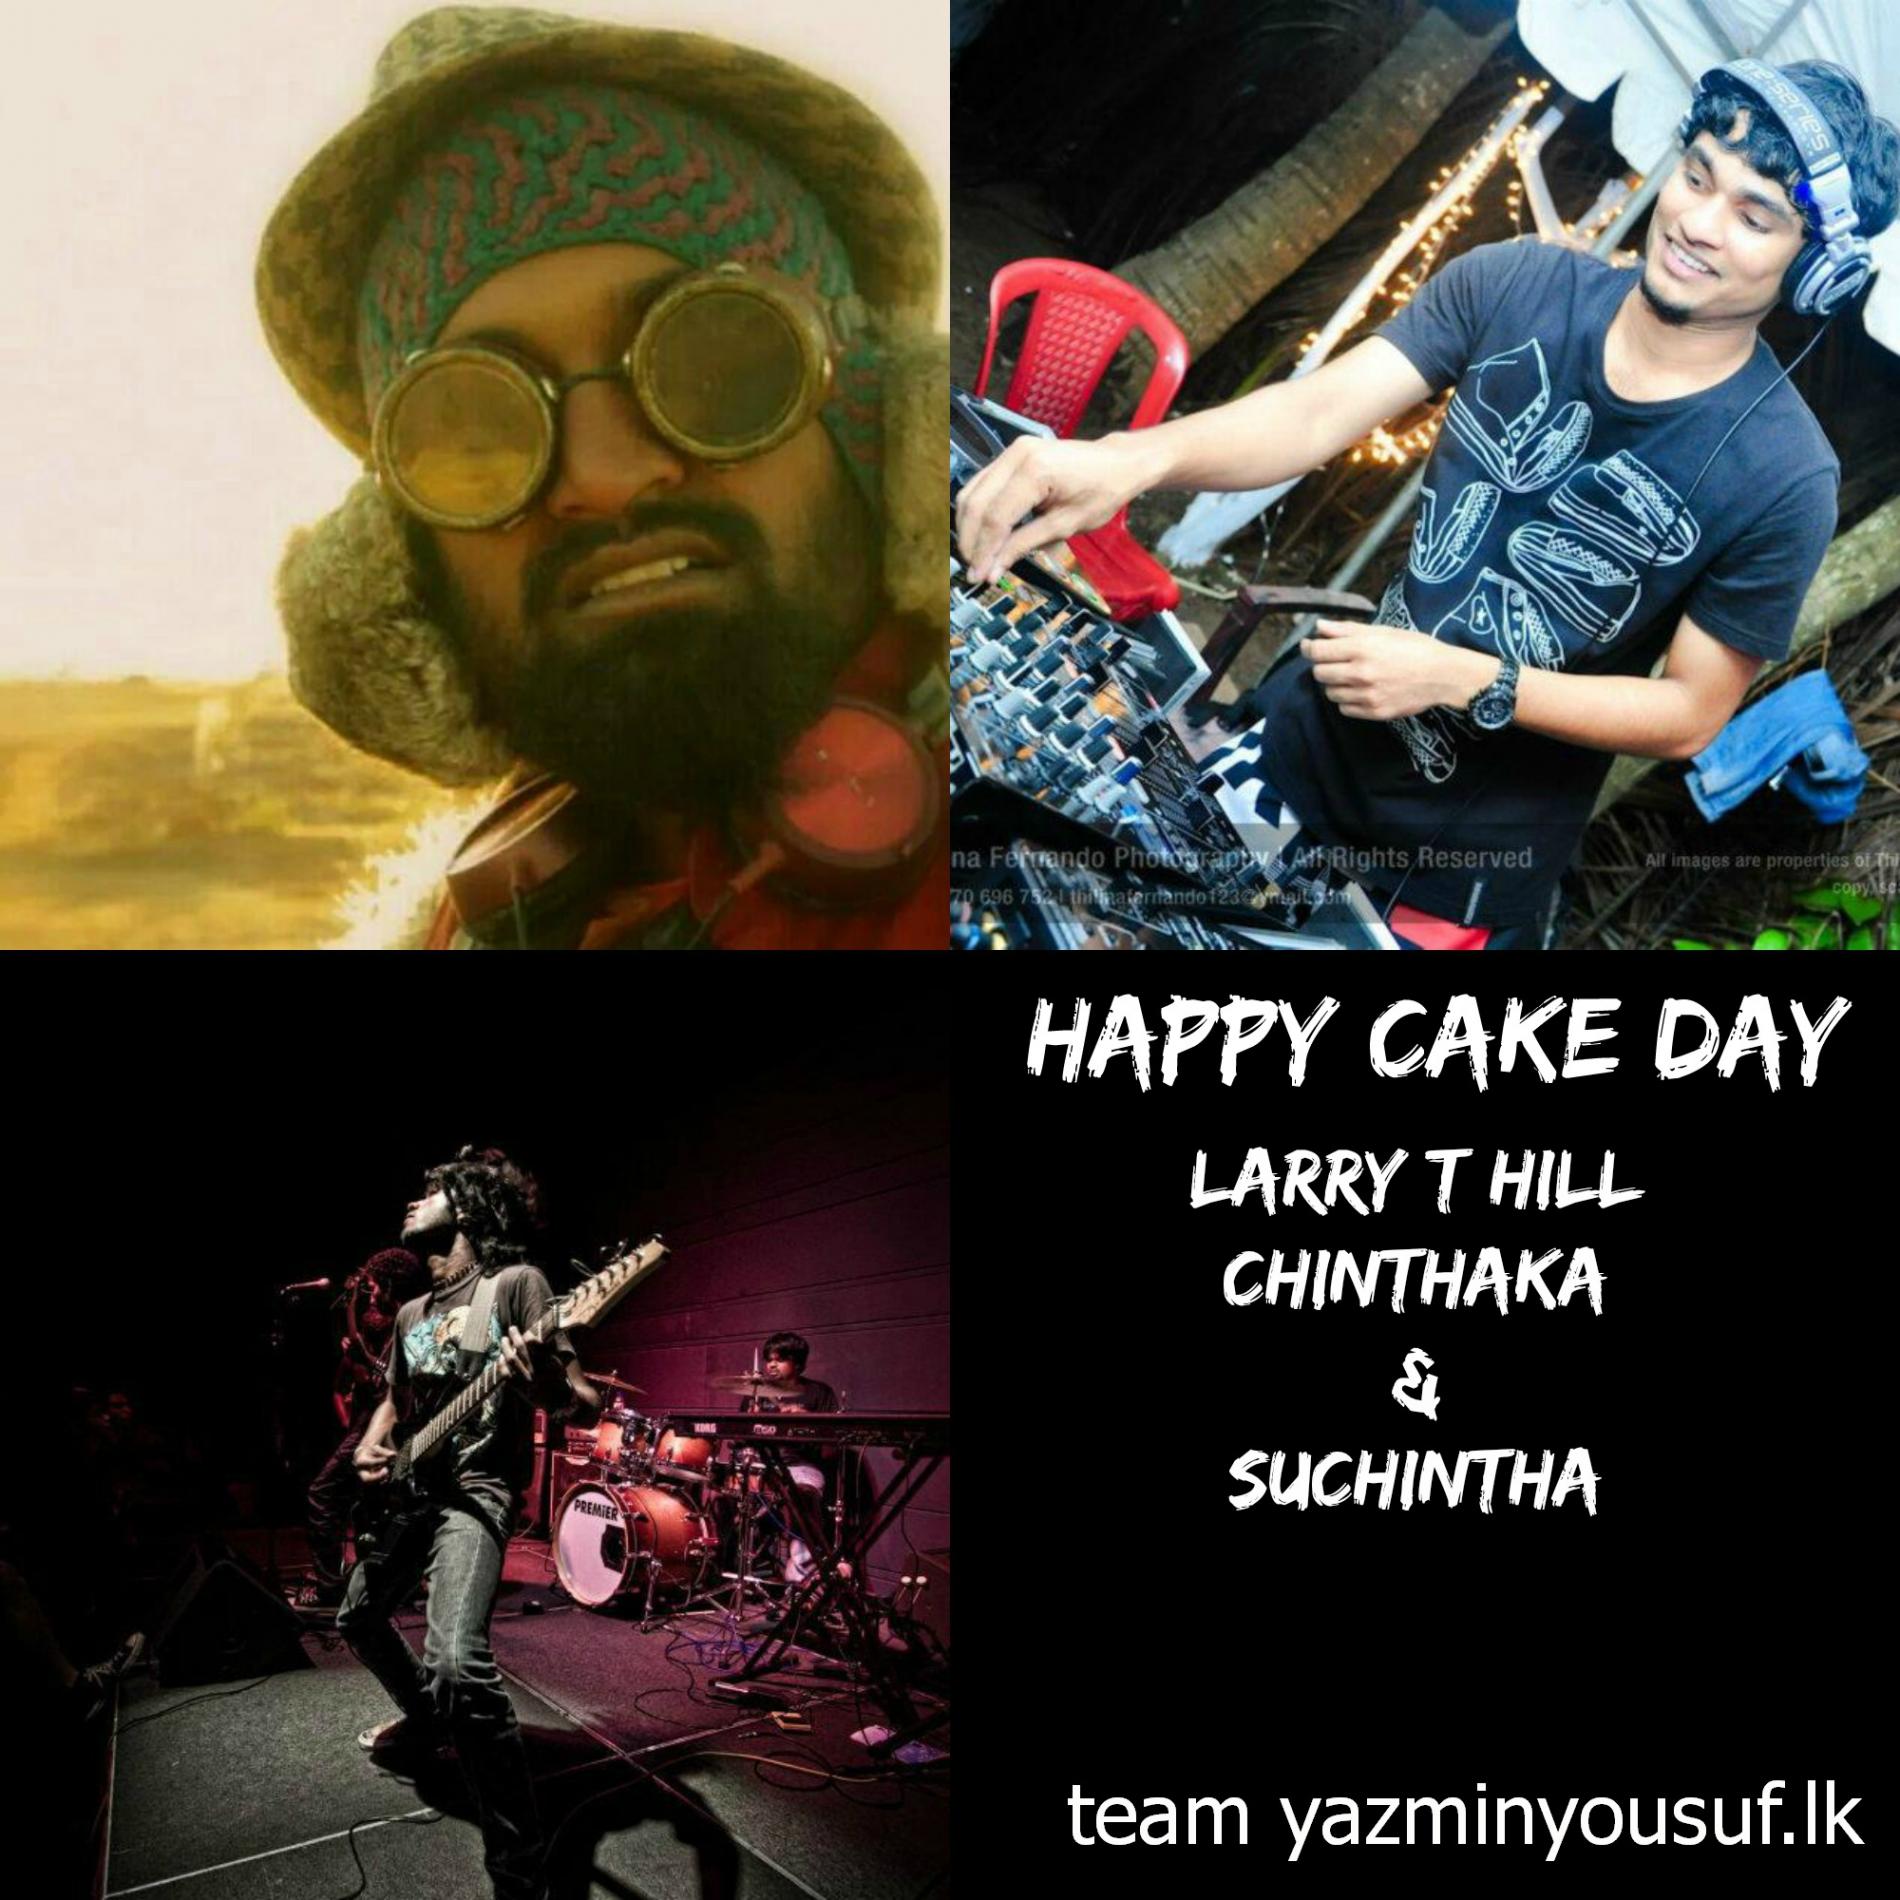 Happy Cake Day To Larry T Hill, Chinthaka Fernando & Suchintha